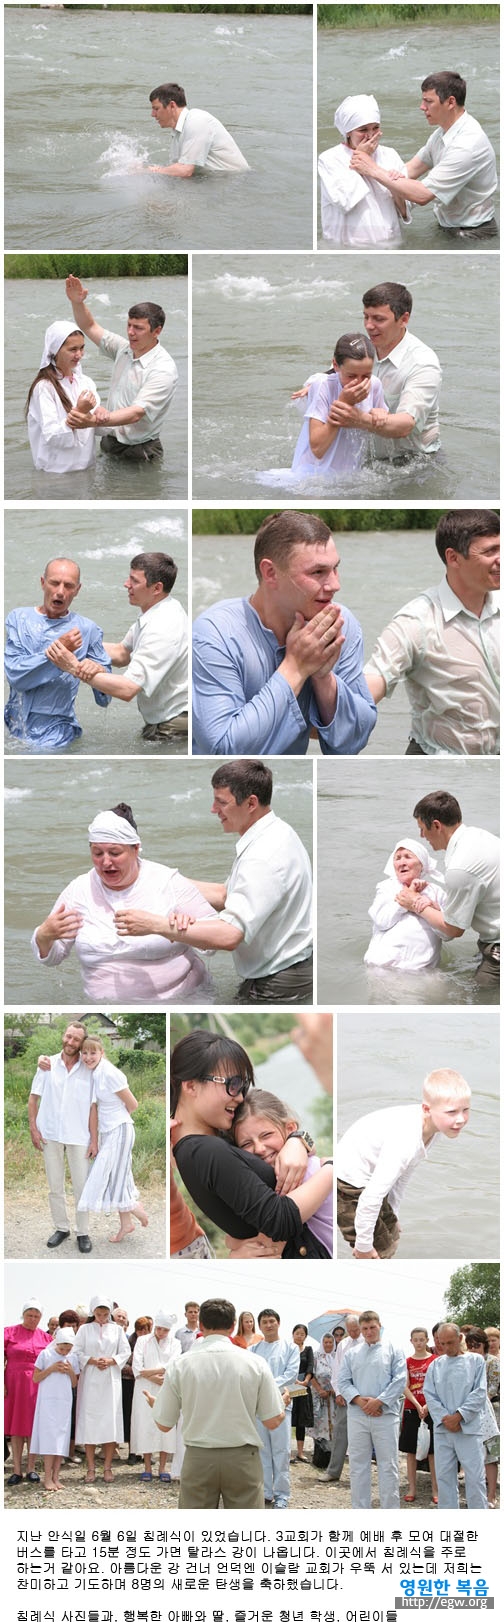 baptise.jpg